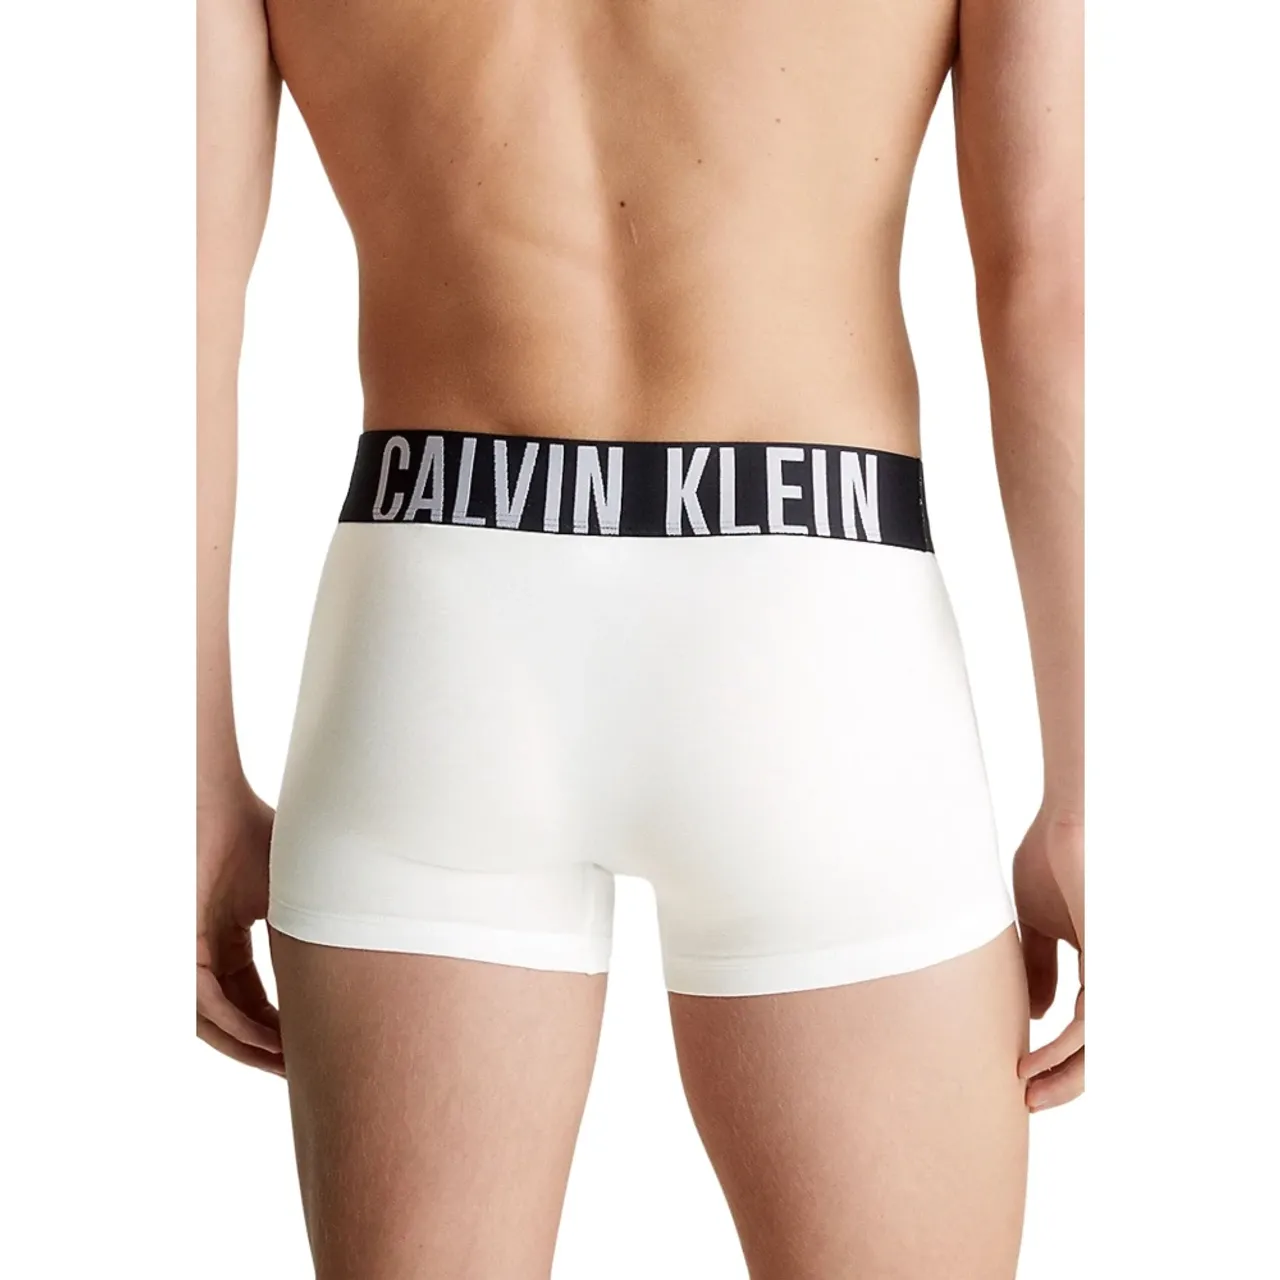 Weißes Boxershorts Set Calvin Klein